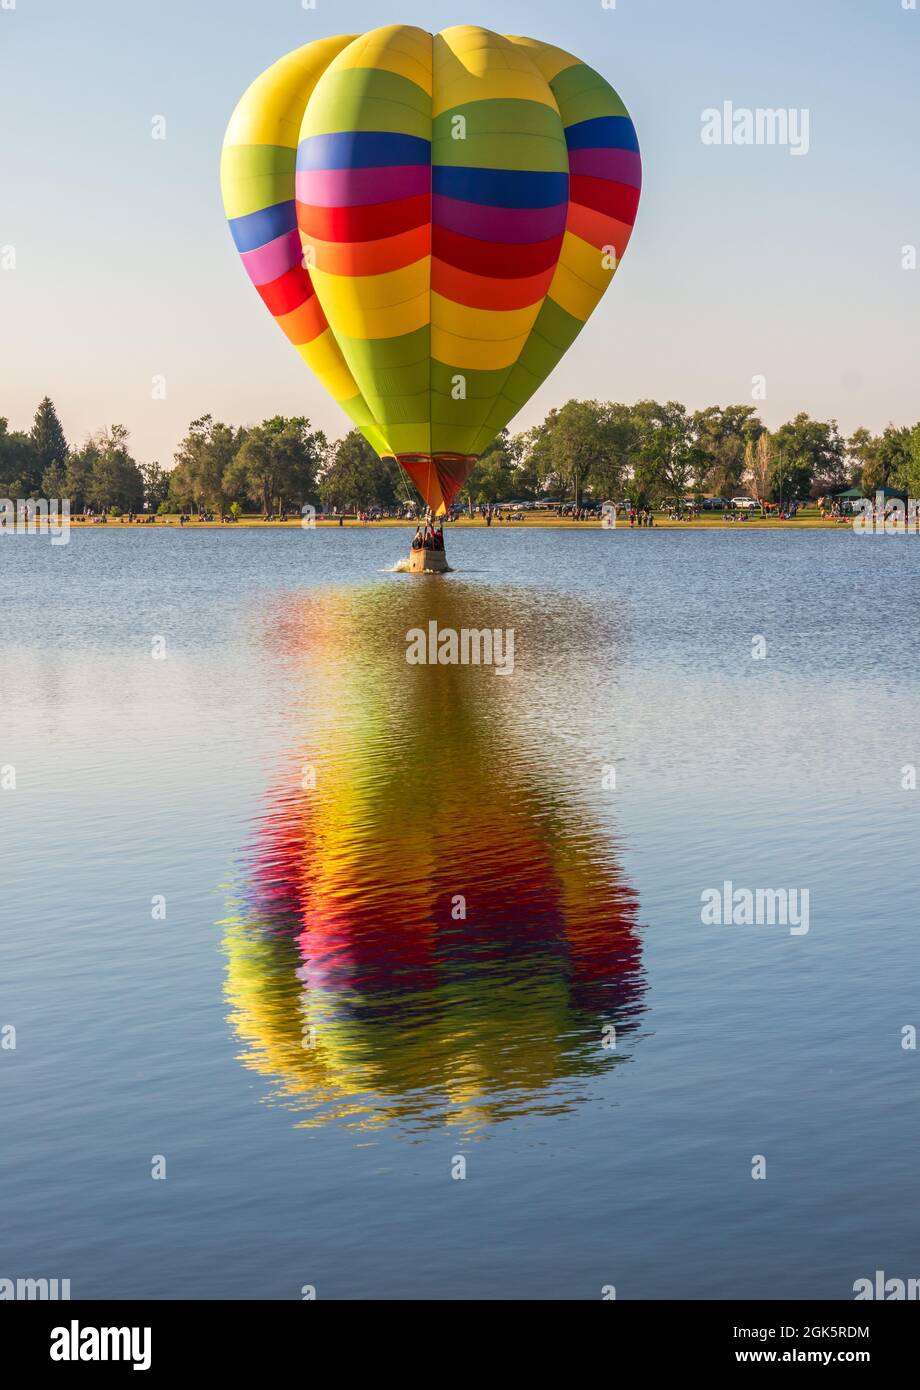 memorial park colorado springs hot air balloon